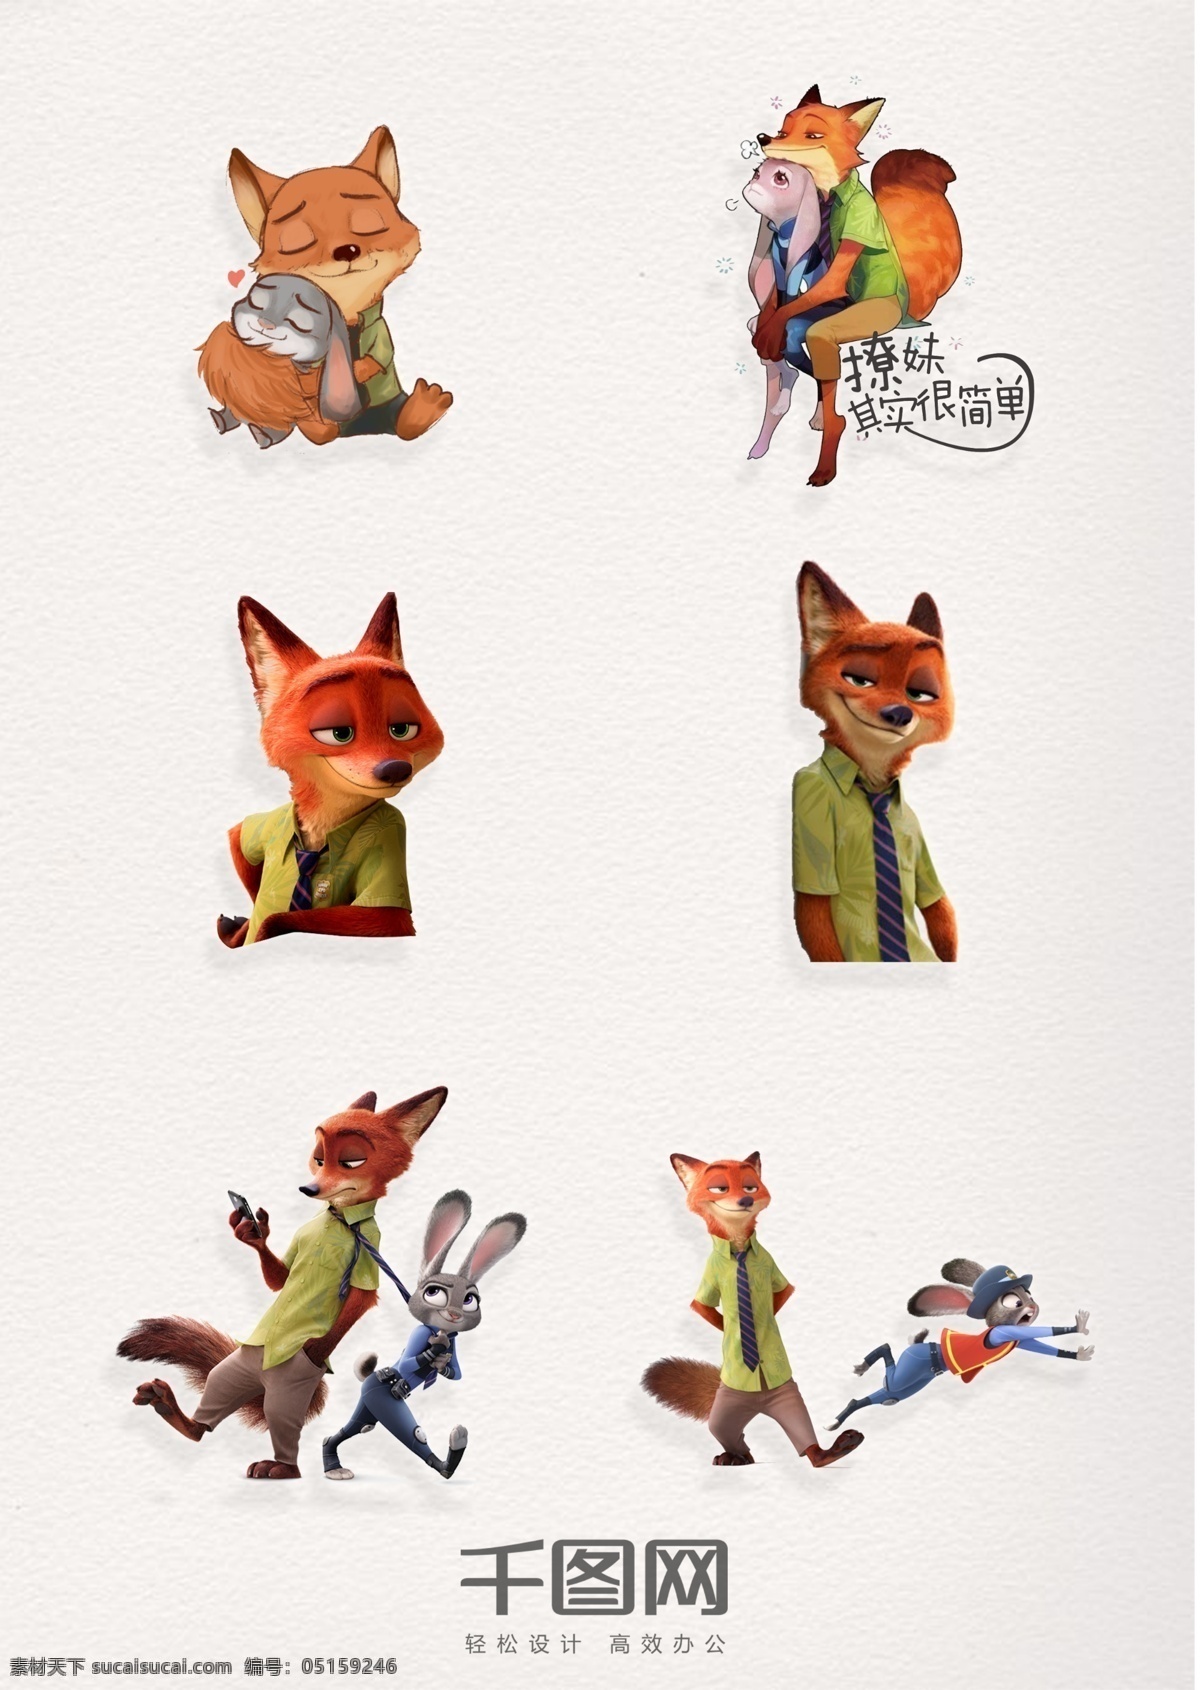 疯狂 动物 城 狐狸 元素 图案 狐狸和兔子 疯狂动物城 狐狸图案 装饰 兔子 兔 朱迪 尼克 卡通狐狸